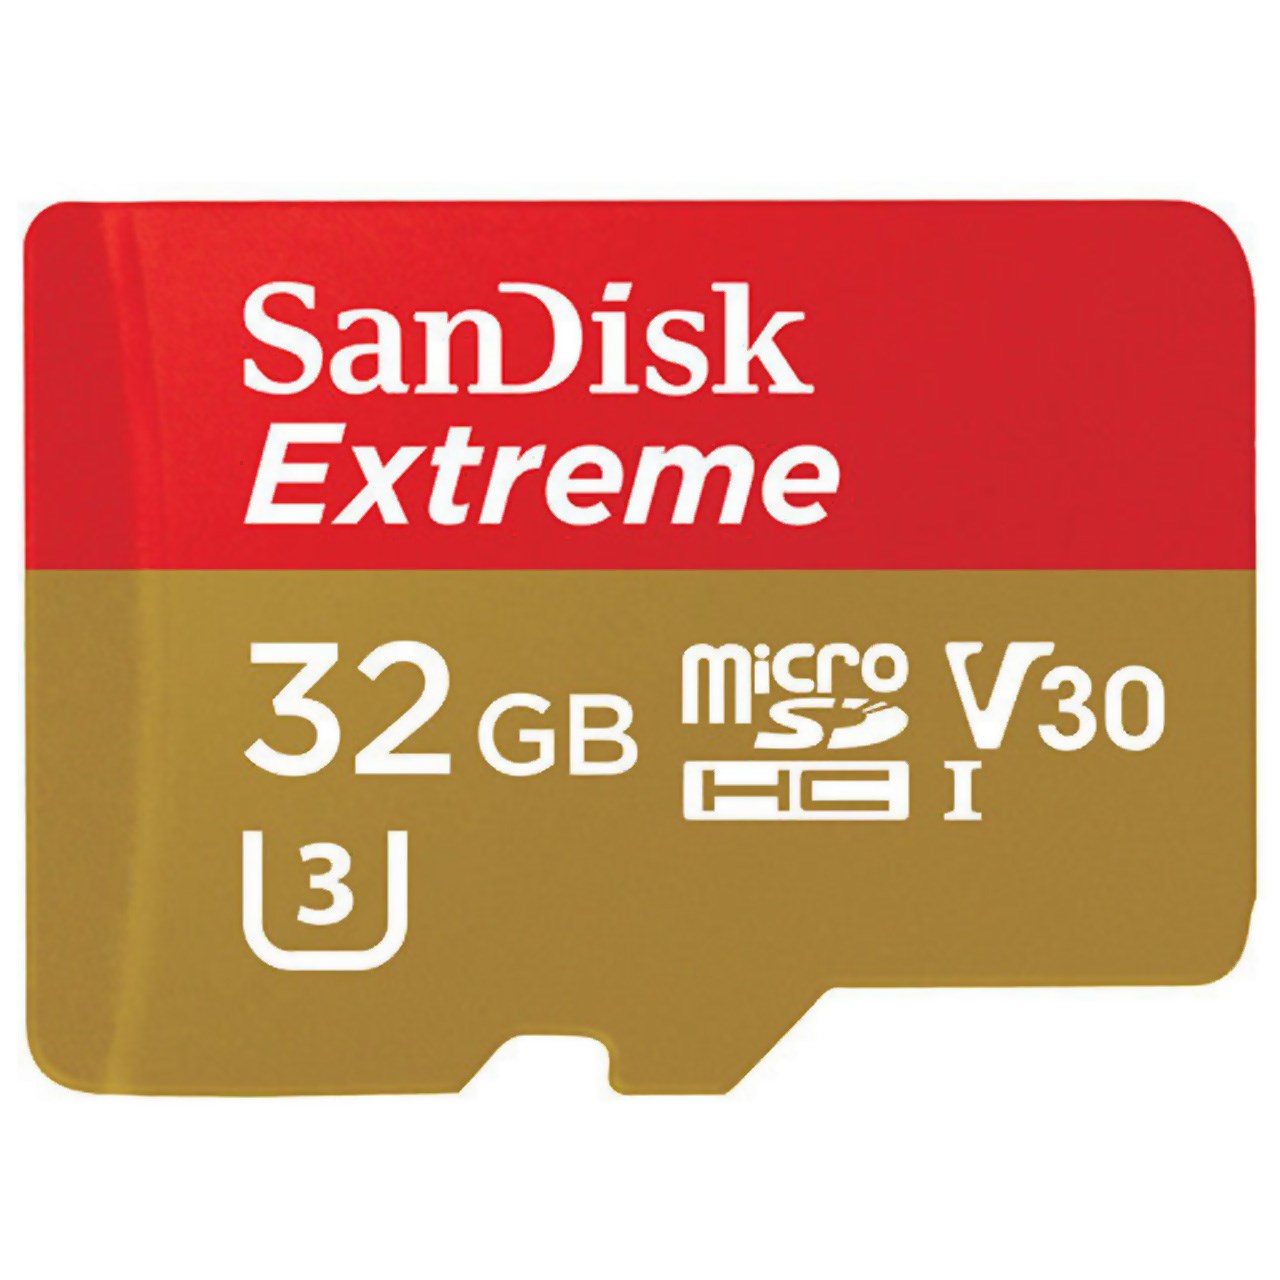 کارت حافظه microSDHC  مدل Extreme V30 کلاس 10 استاندارد UHS-I U3 سرعت 90MBps ظرفیت 32 گیگابایت